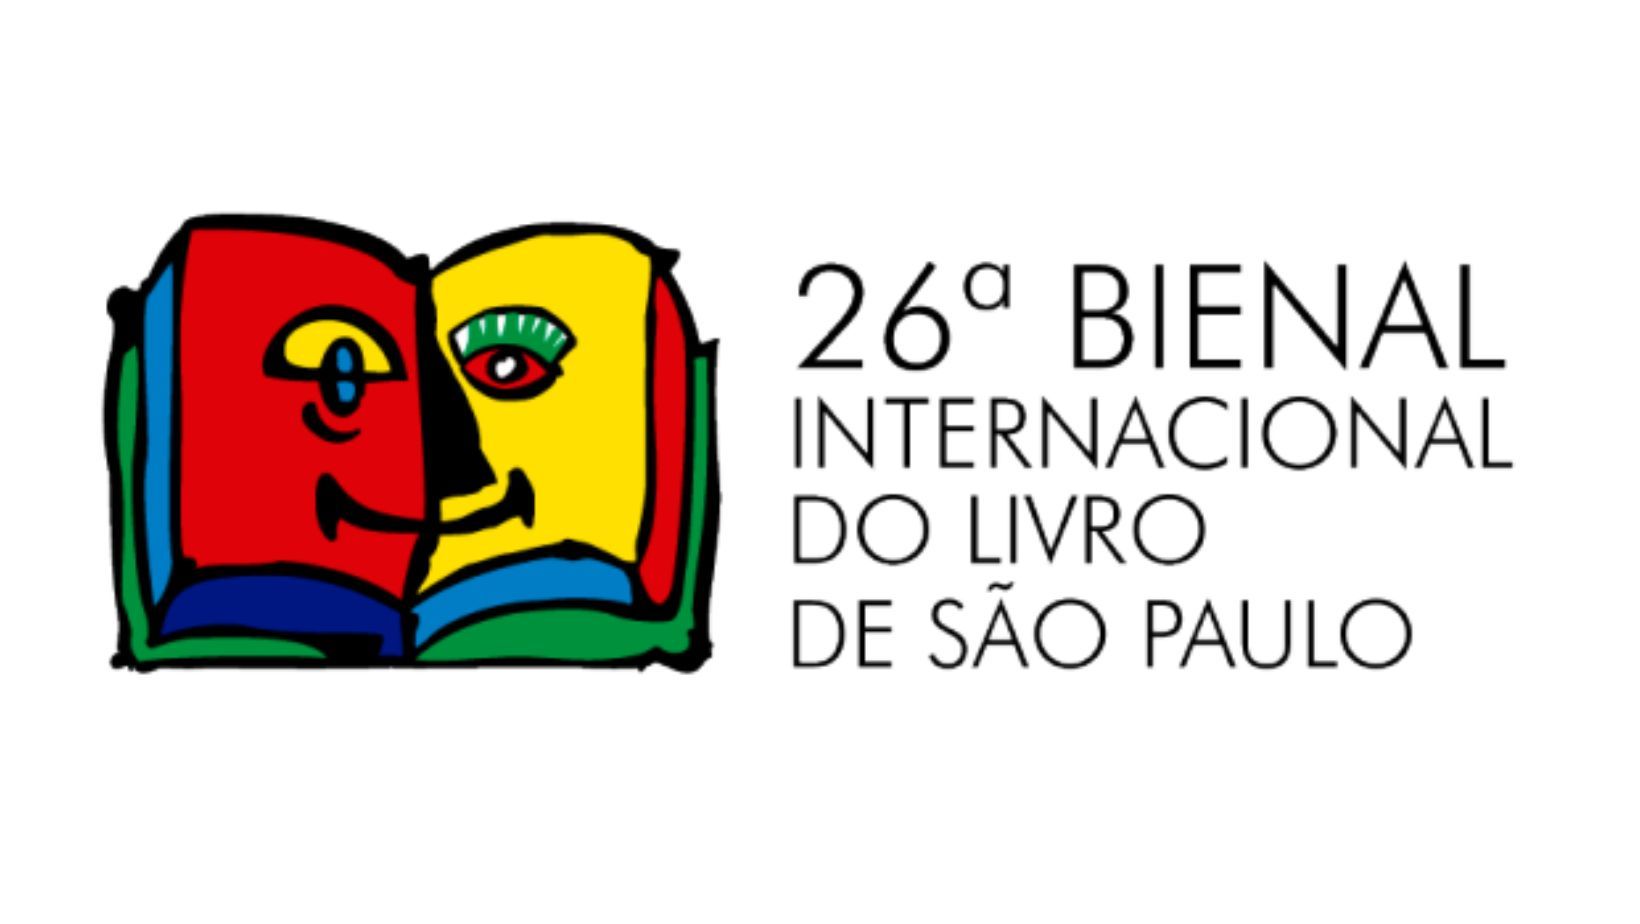 Autores nacionais pra conferir na Bienal do Livro – Blog da